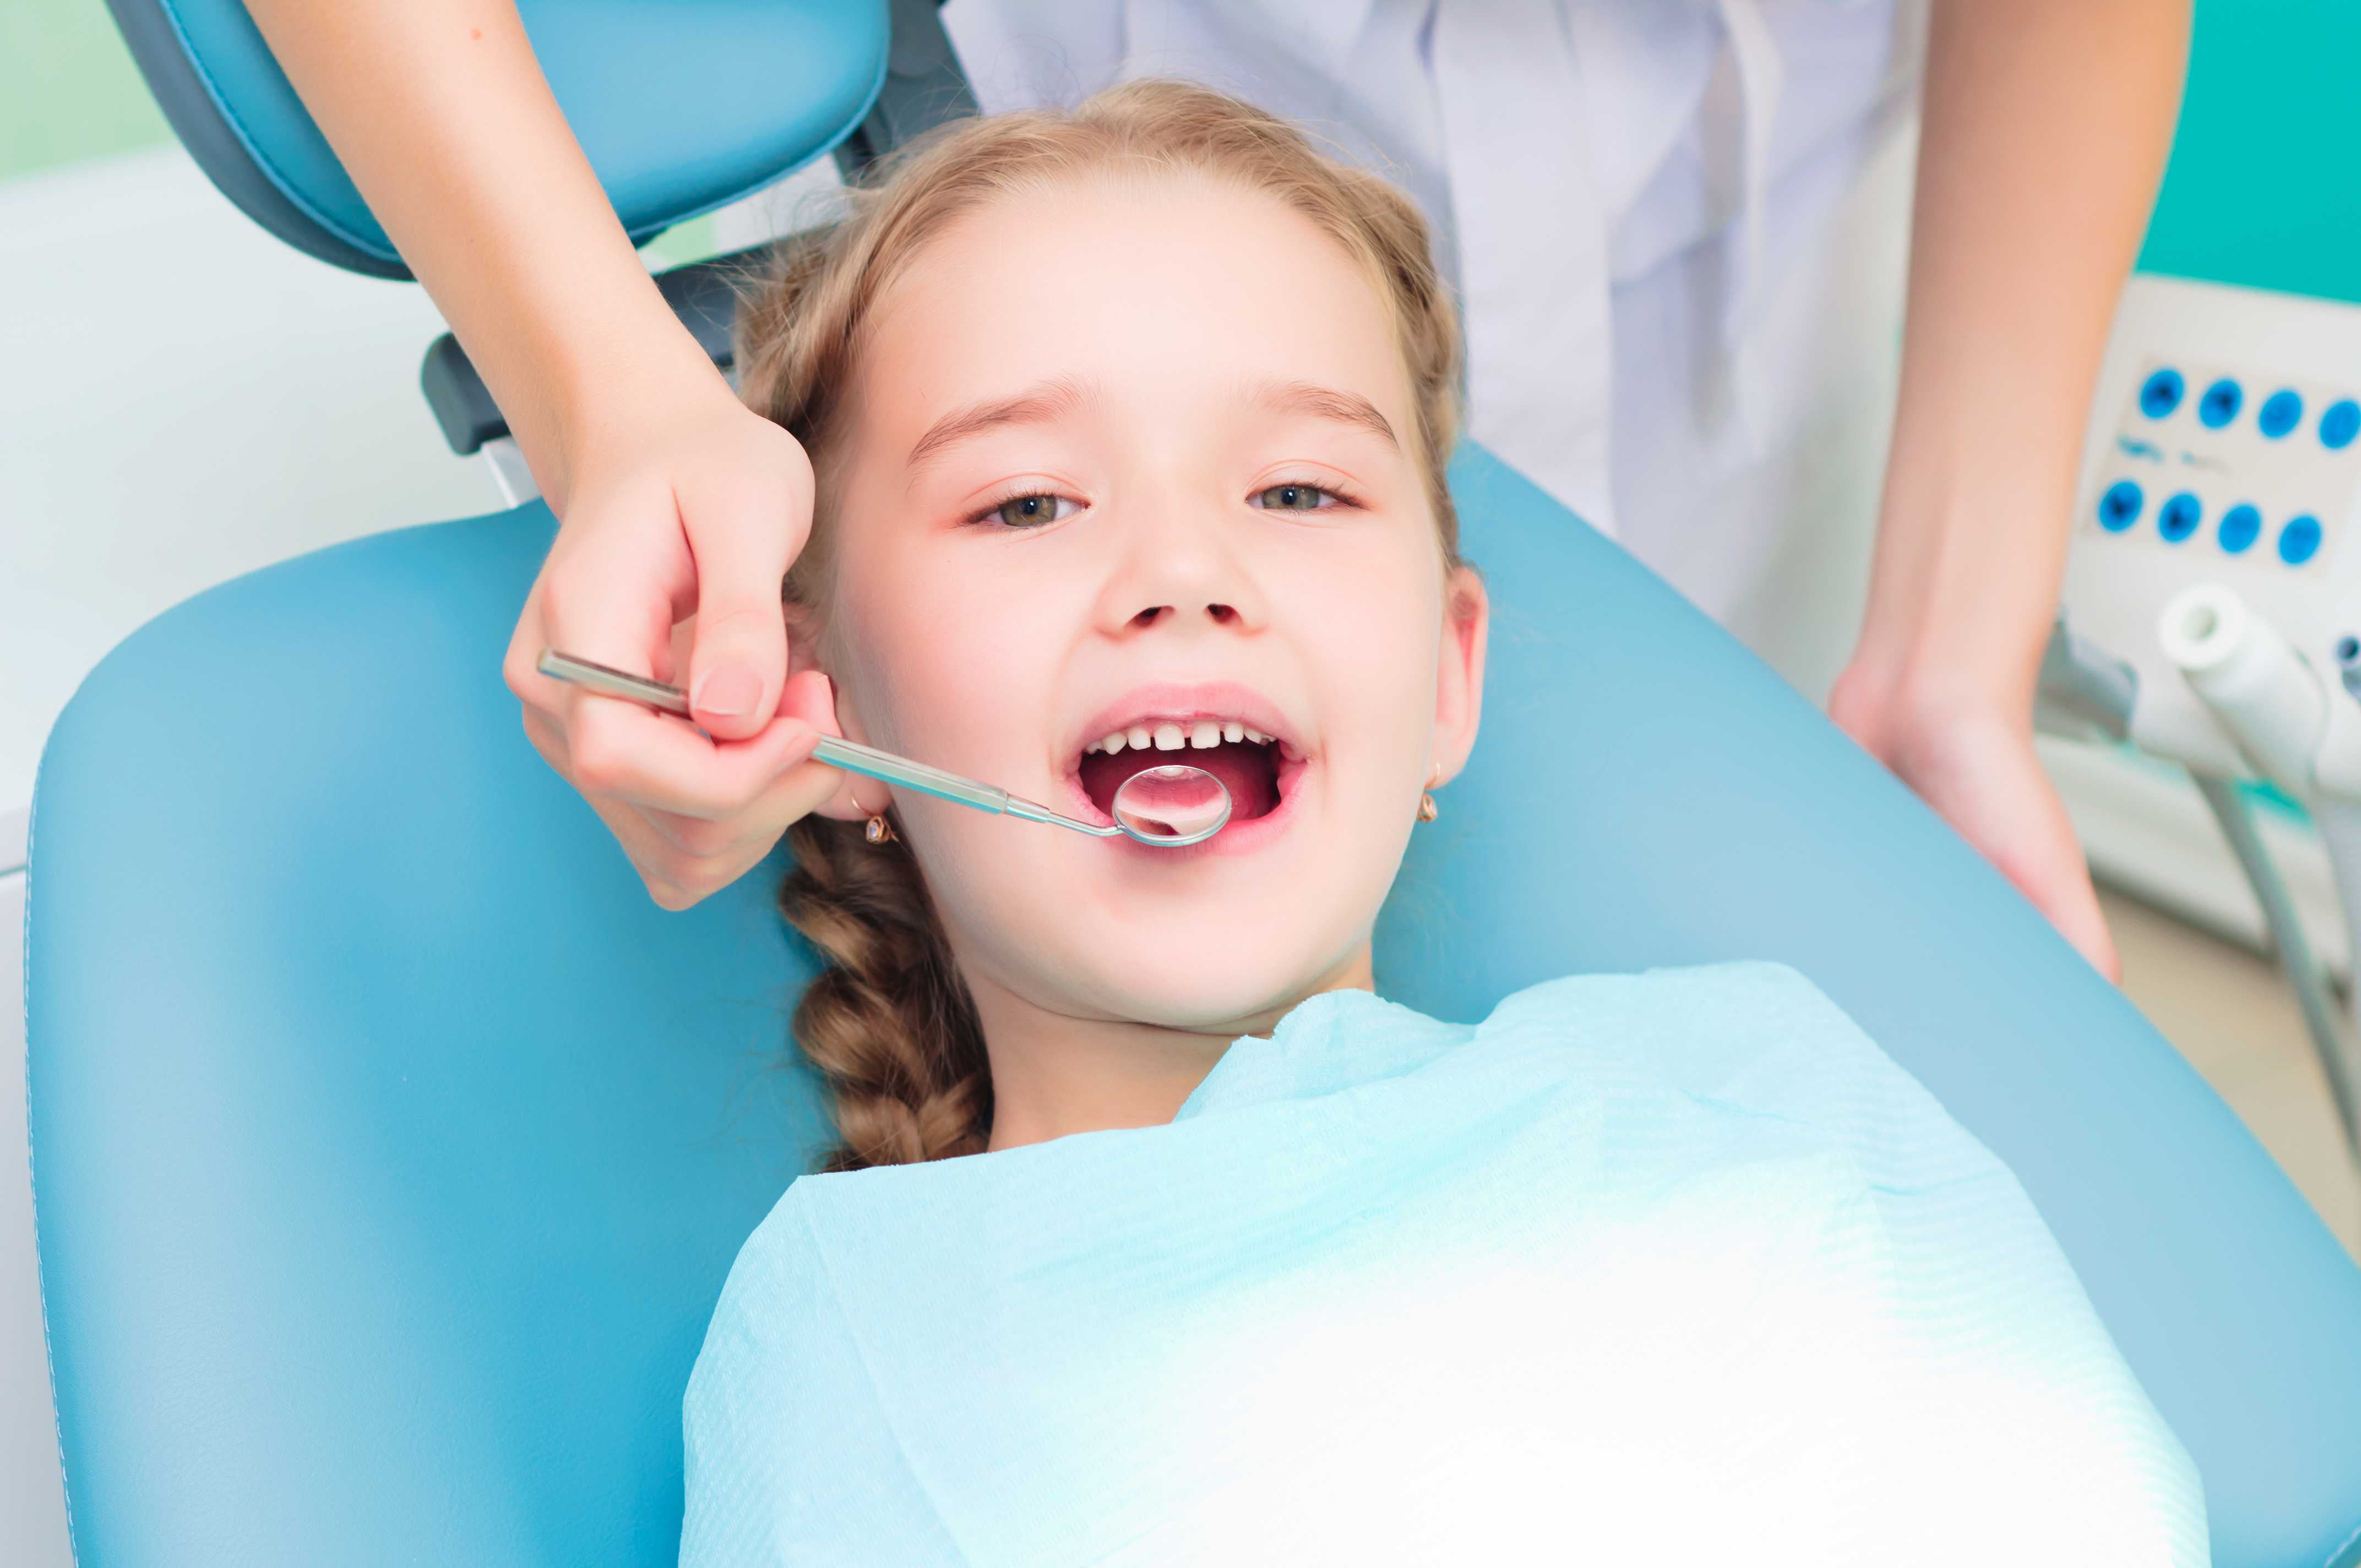 Лечение полости рта и зубов. Гигиена зубов для детей. Ребенок у стоматолога. Гигиена зубов и полости рта для детей. Профессиональная гигиена зубов у детей.